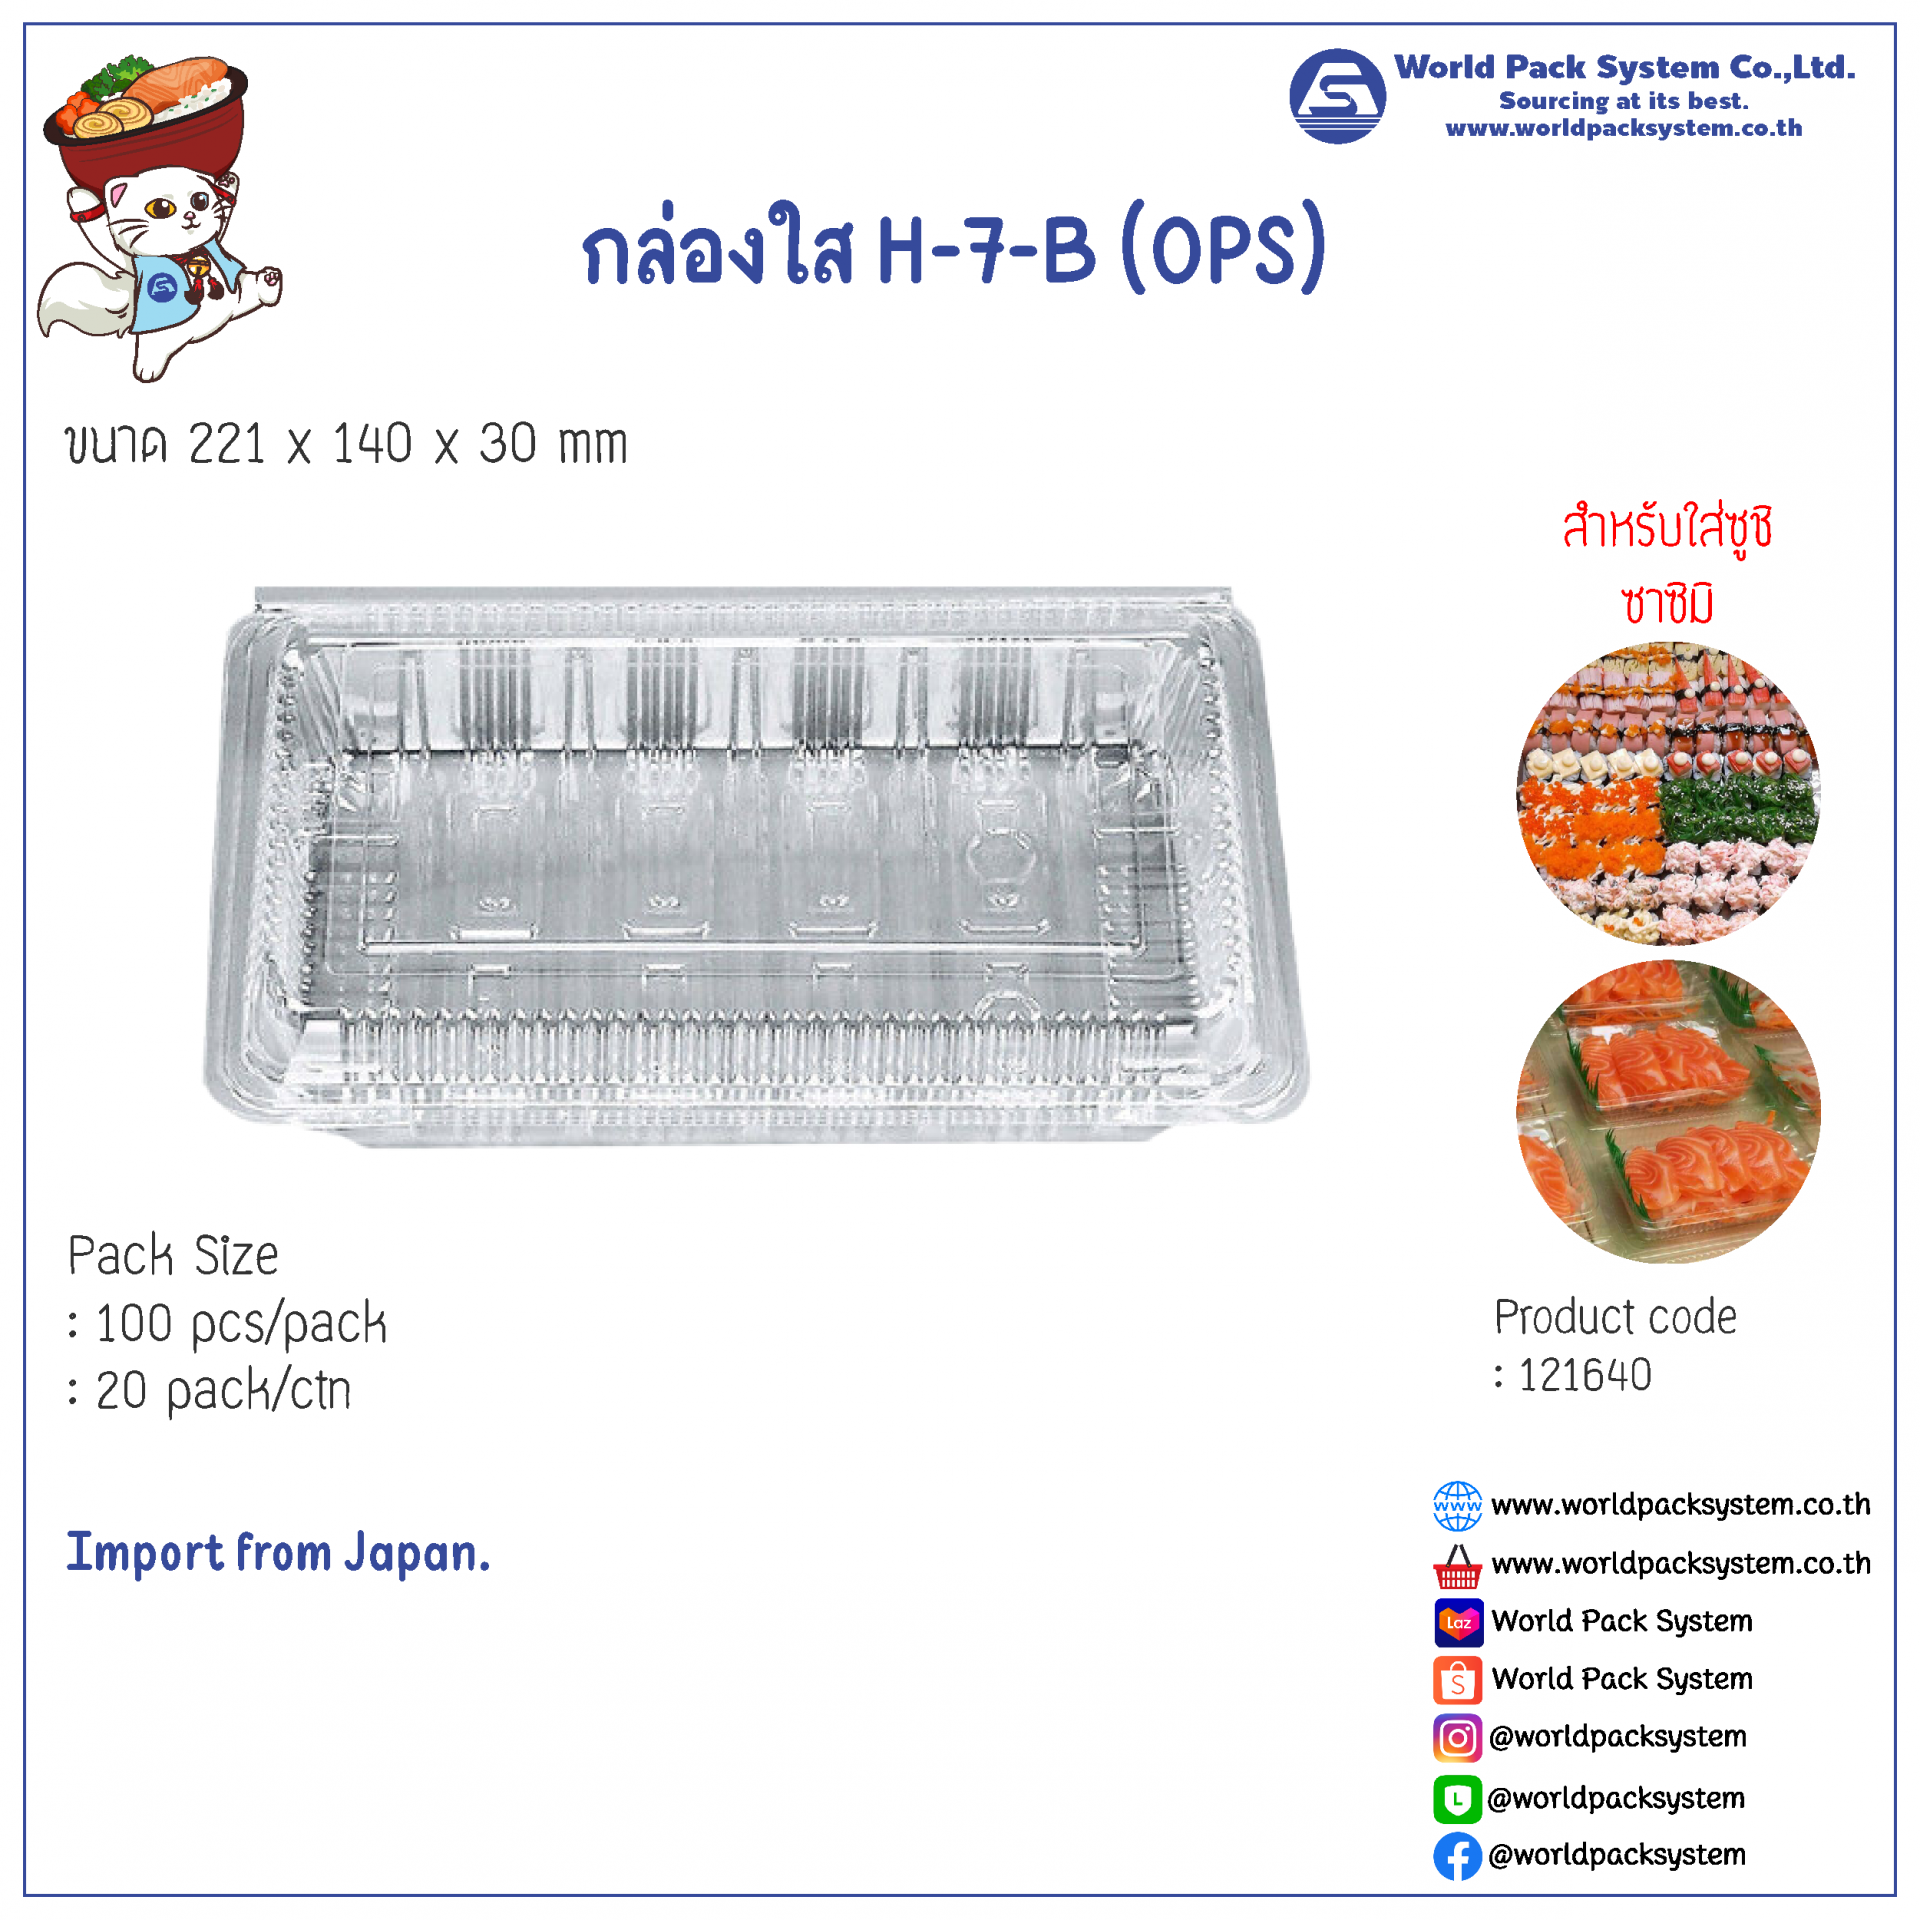 Food Pack H-7-B (OPS) (100 pcs)